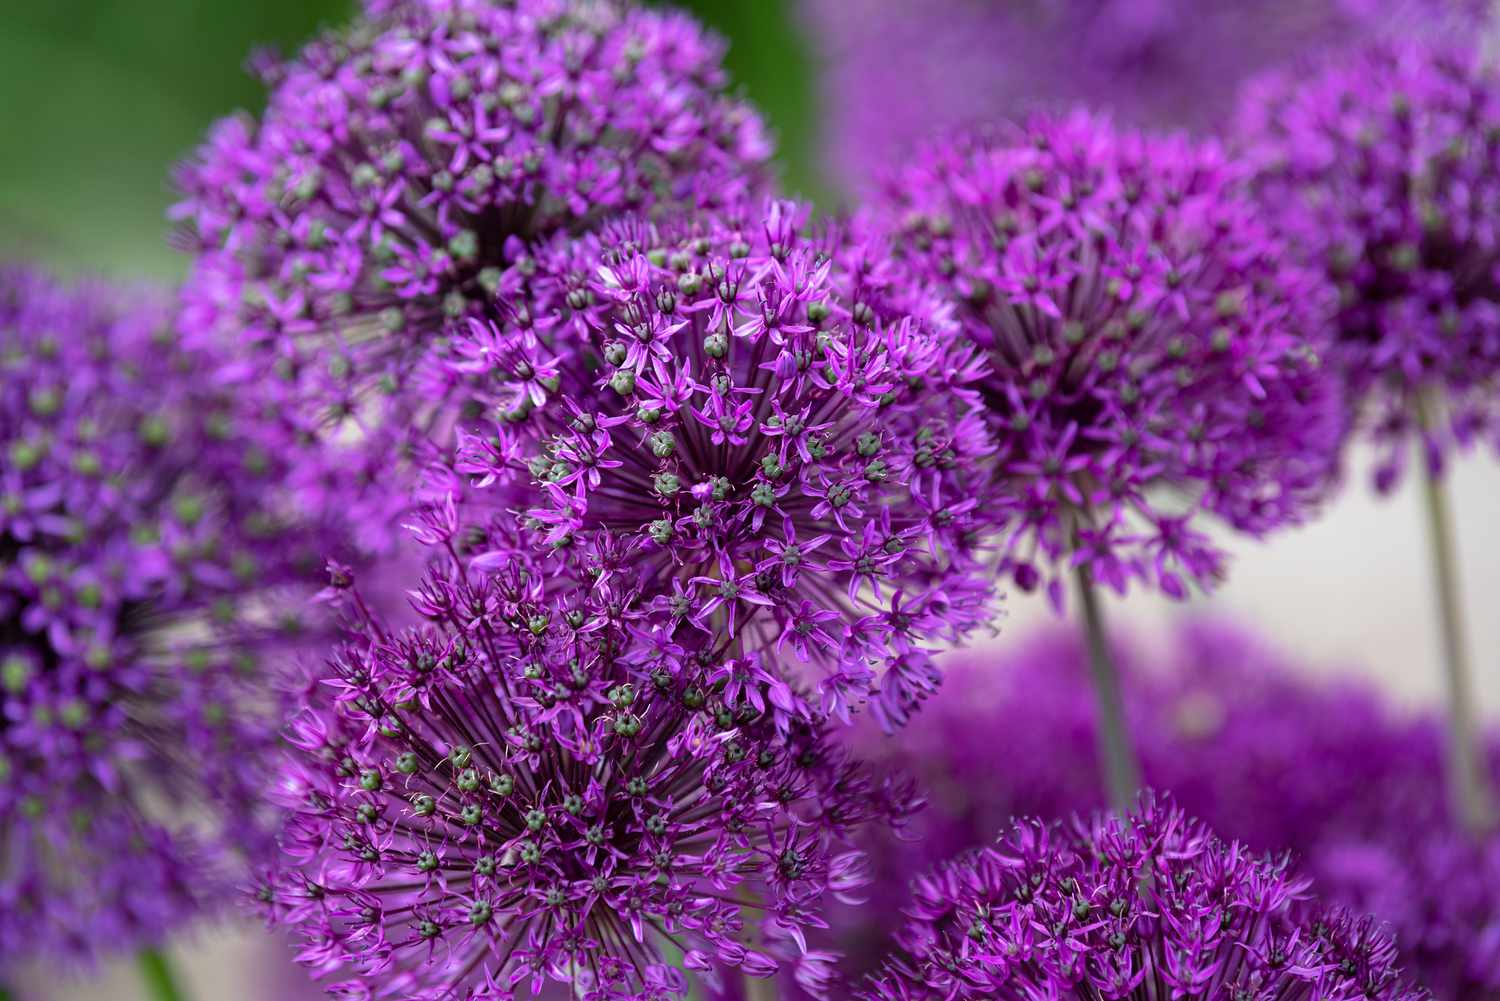 Riesenzwiebelstaude mit violetten sternförmigen Blüten und grünen Knospen in Nahaufnahme